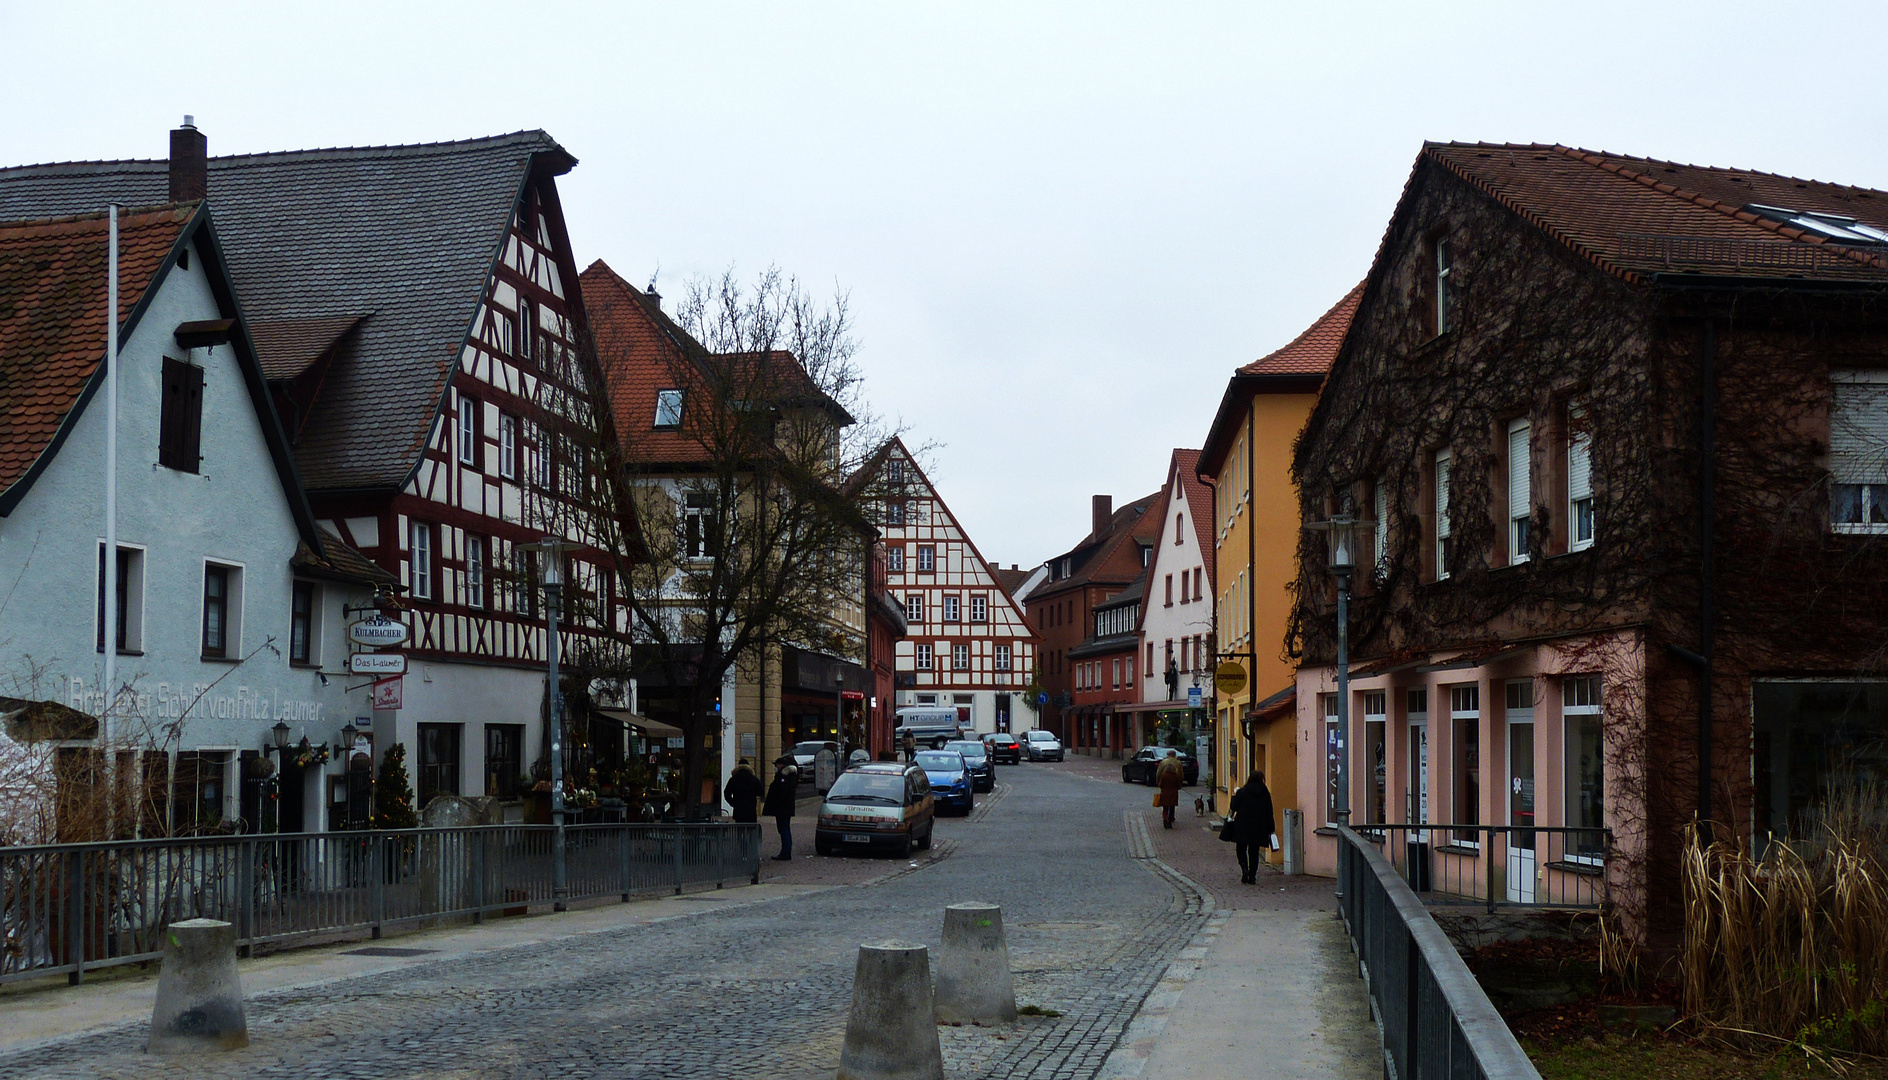 Schwabach eine Stadt in Mittelfranken.  